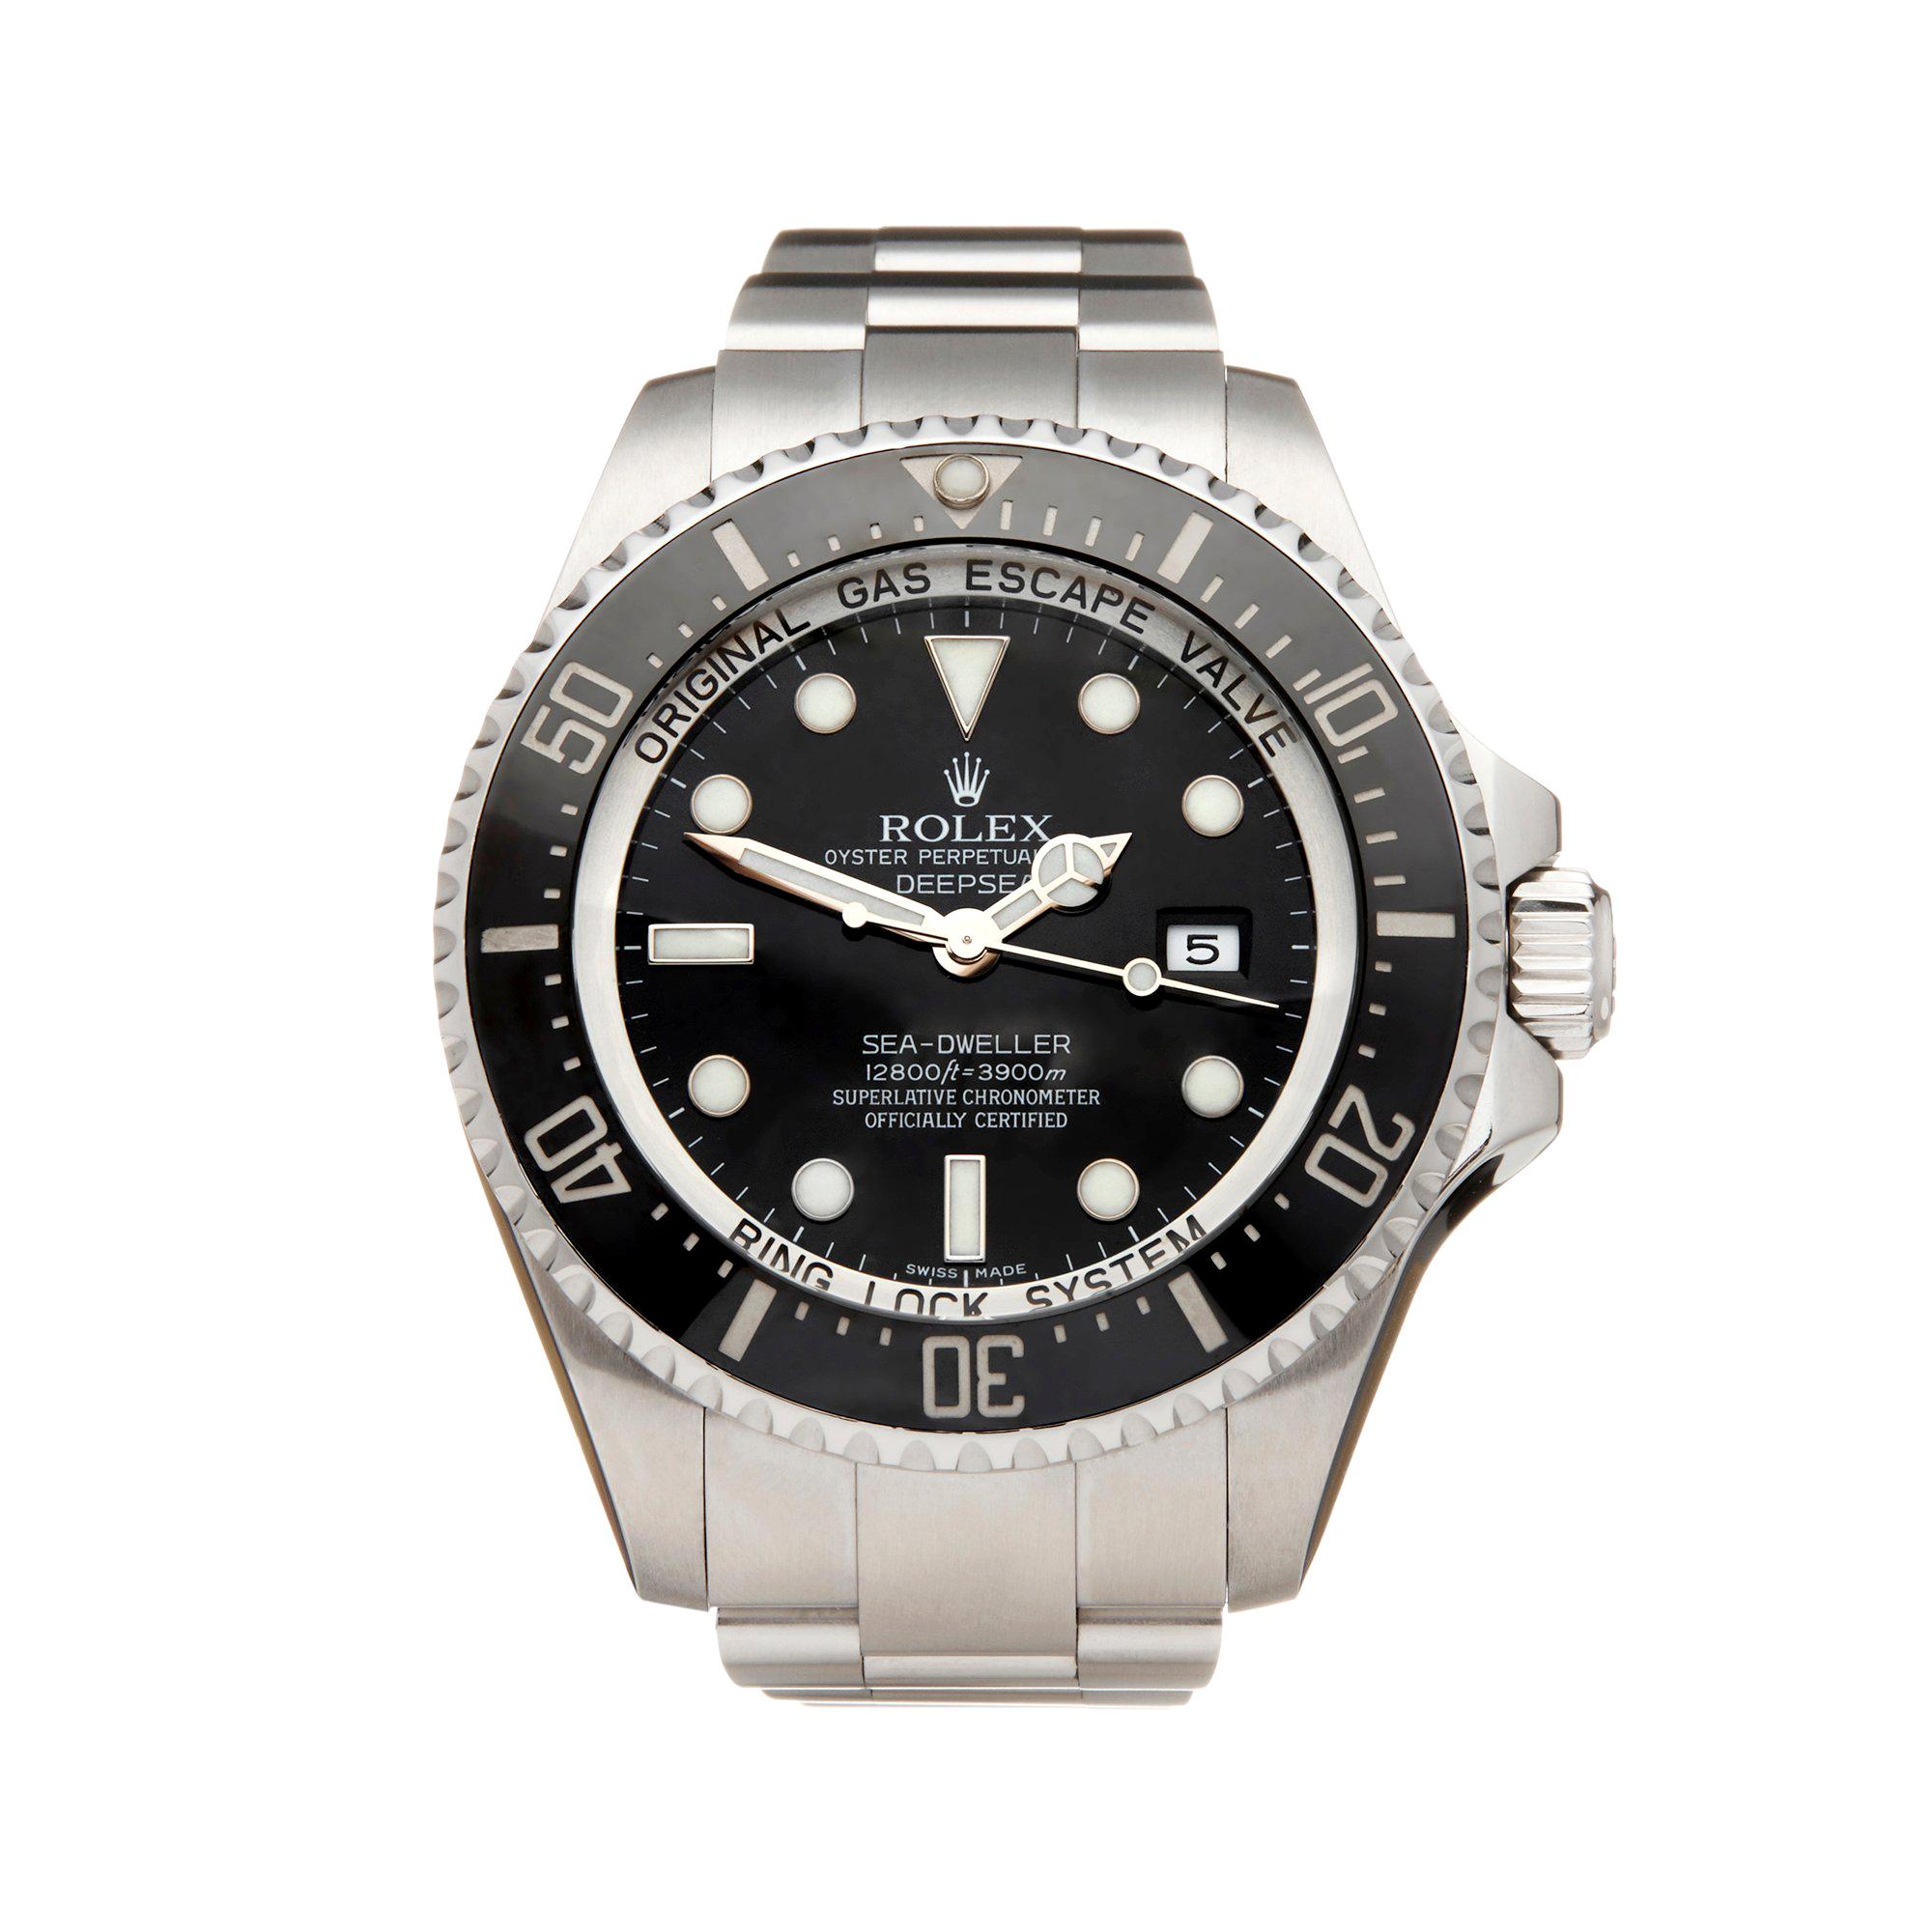 Rolex Sea-Dweller Deepsea Stainless Steel 116660 Wristwatch